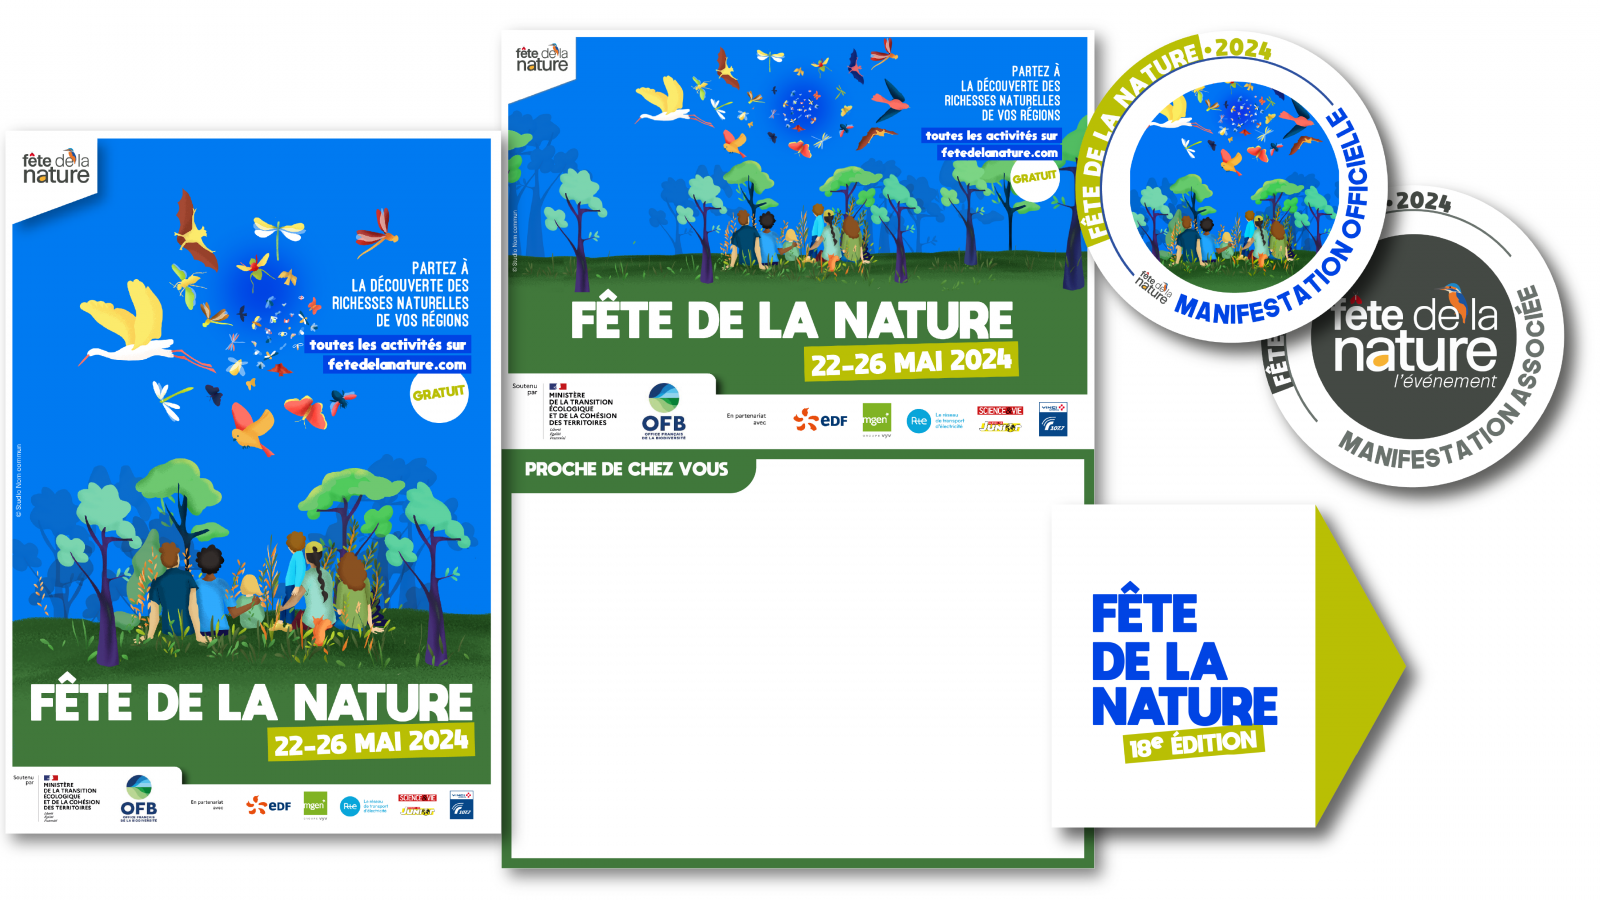 Le kit de promotion de la Fête de la Nature 2024 est disponible